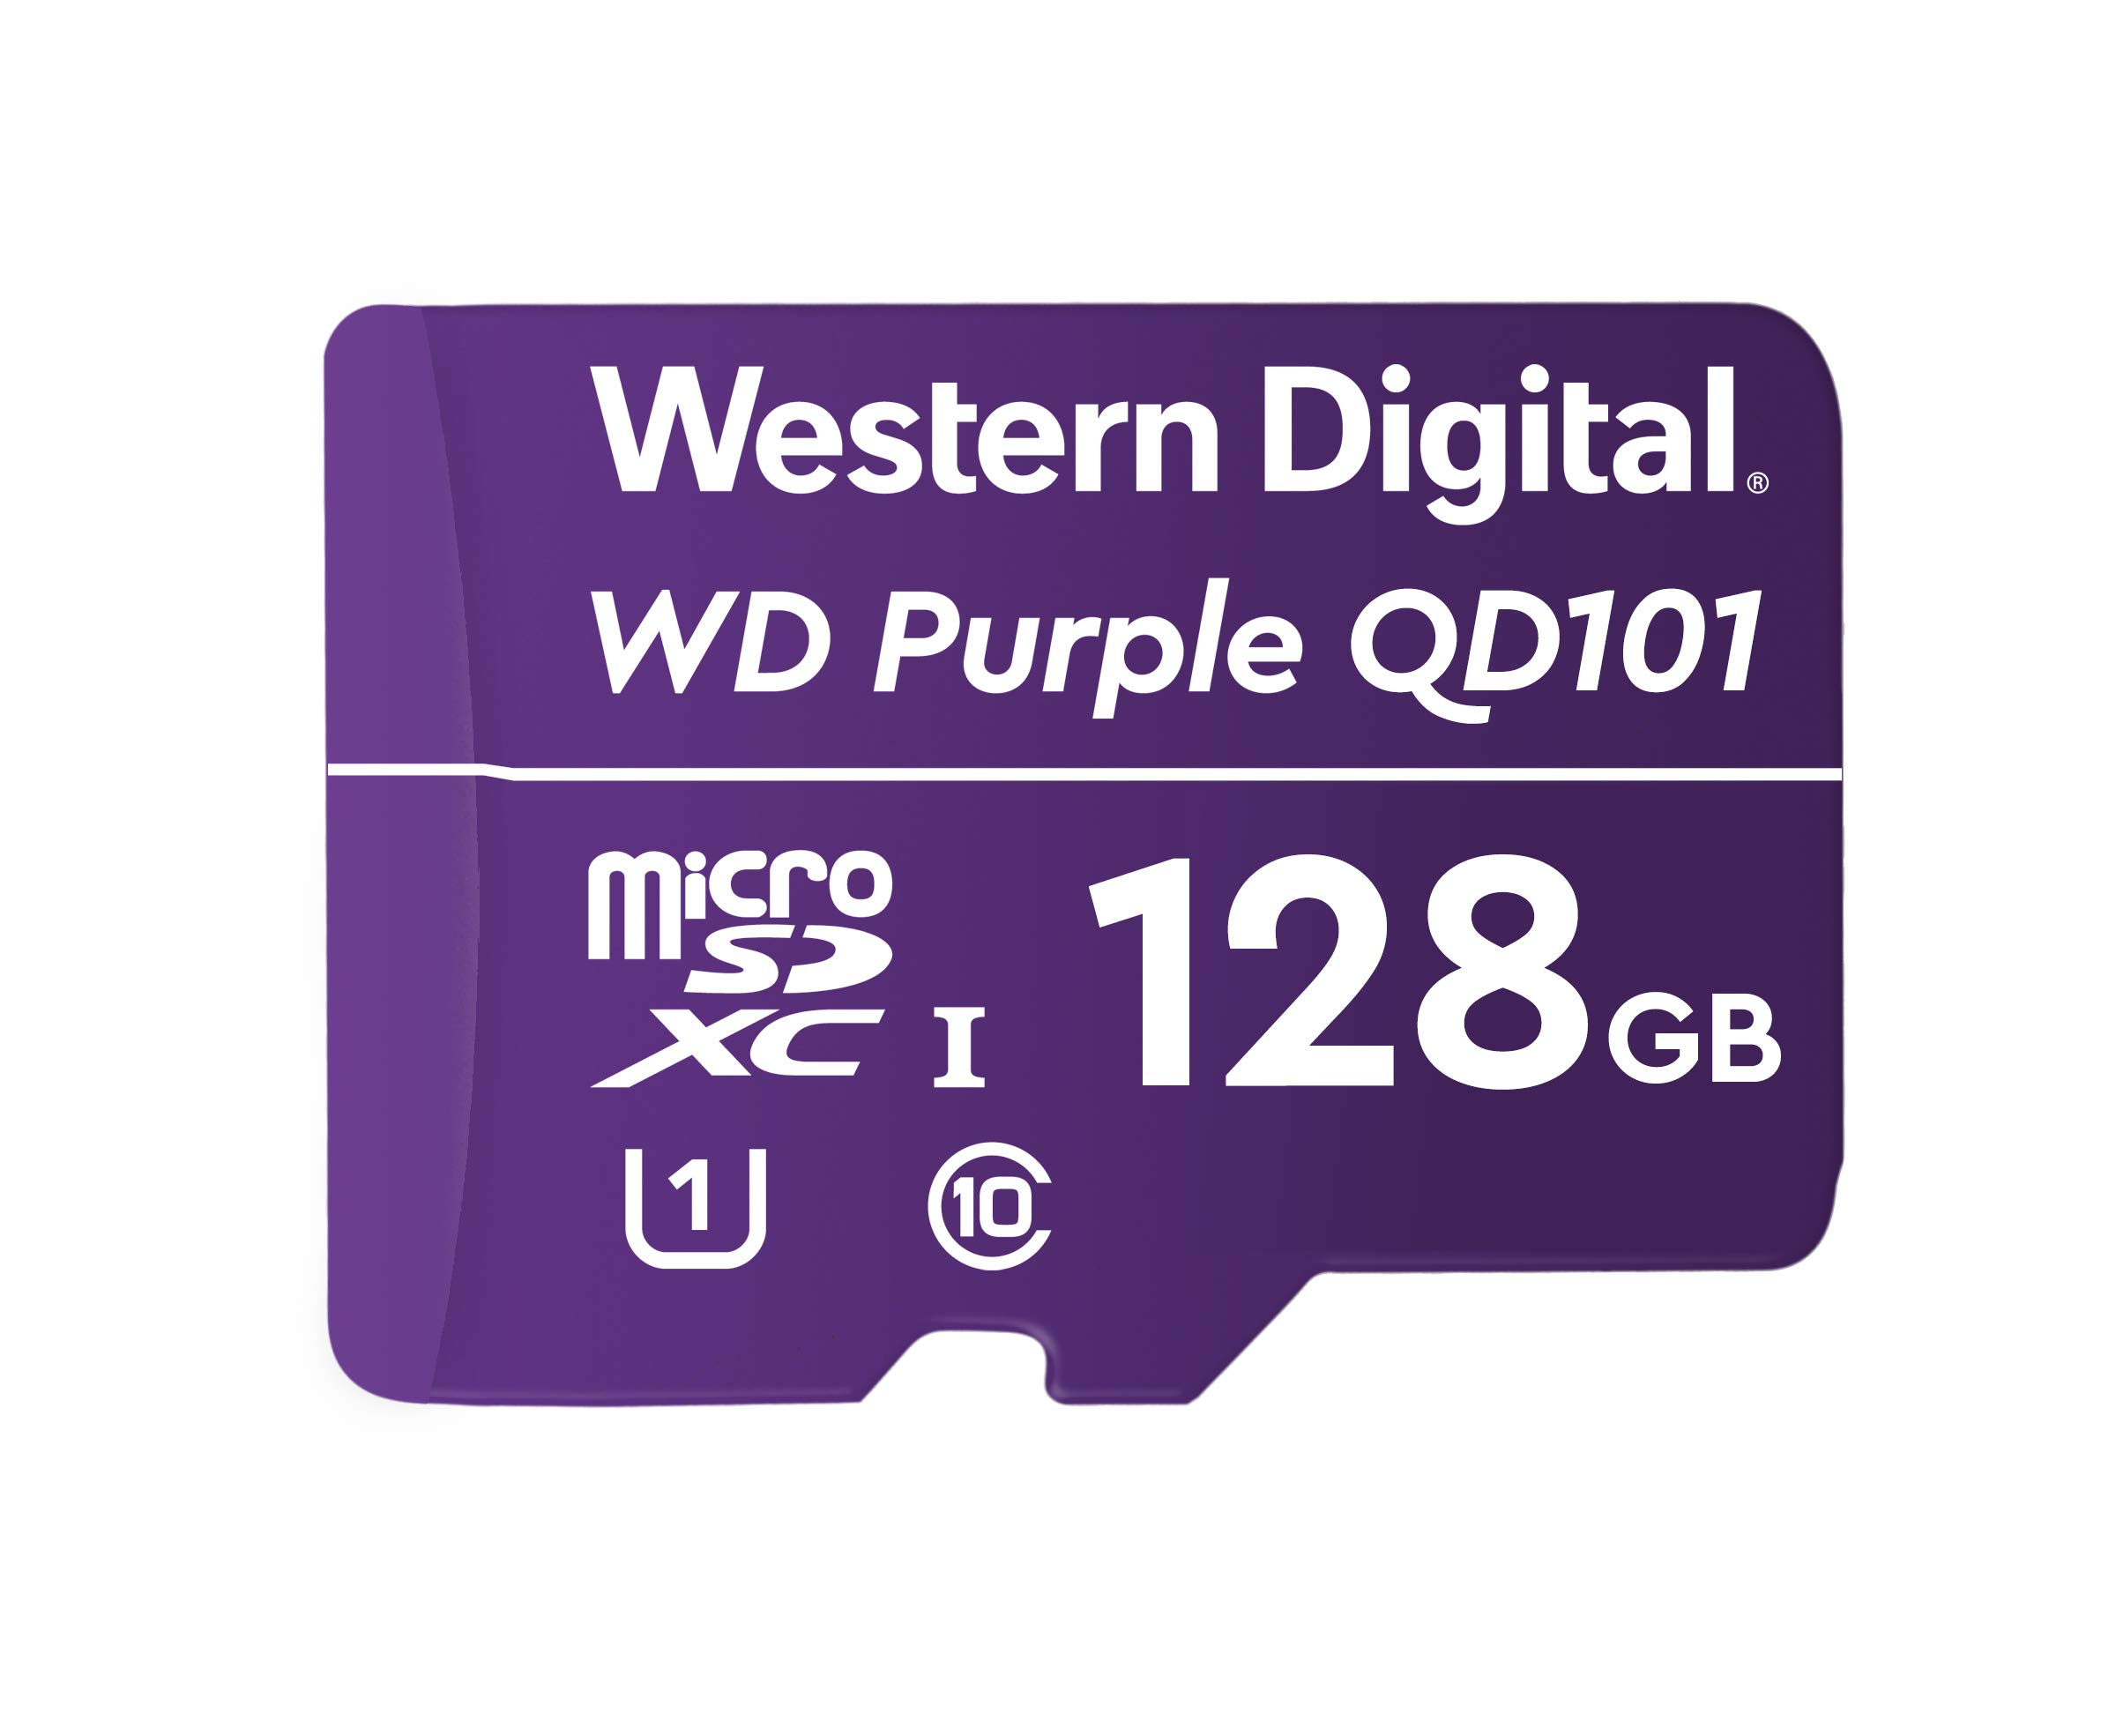 WD PURPLE QD101 MICROSD 128GB